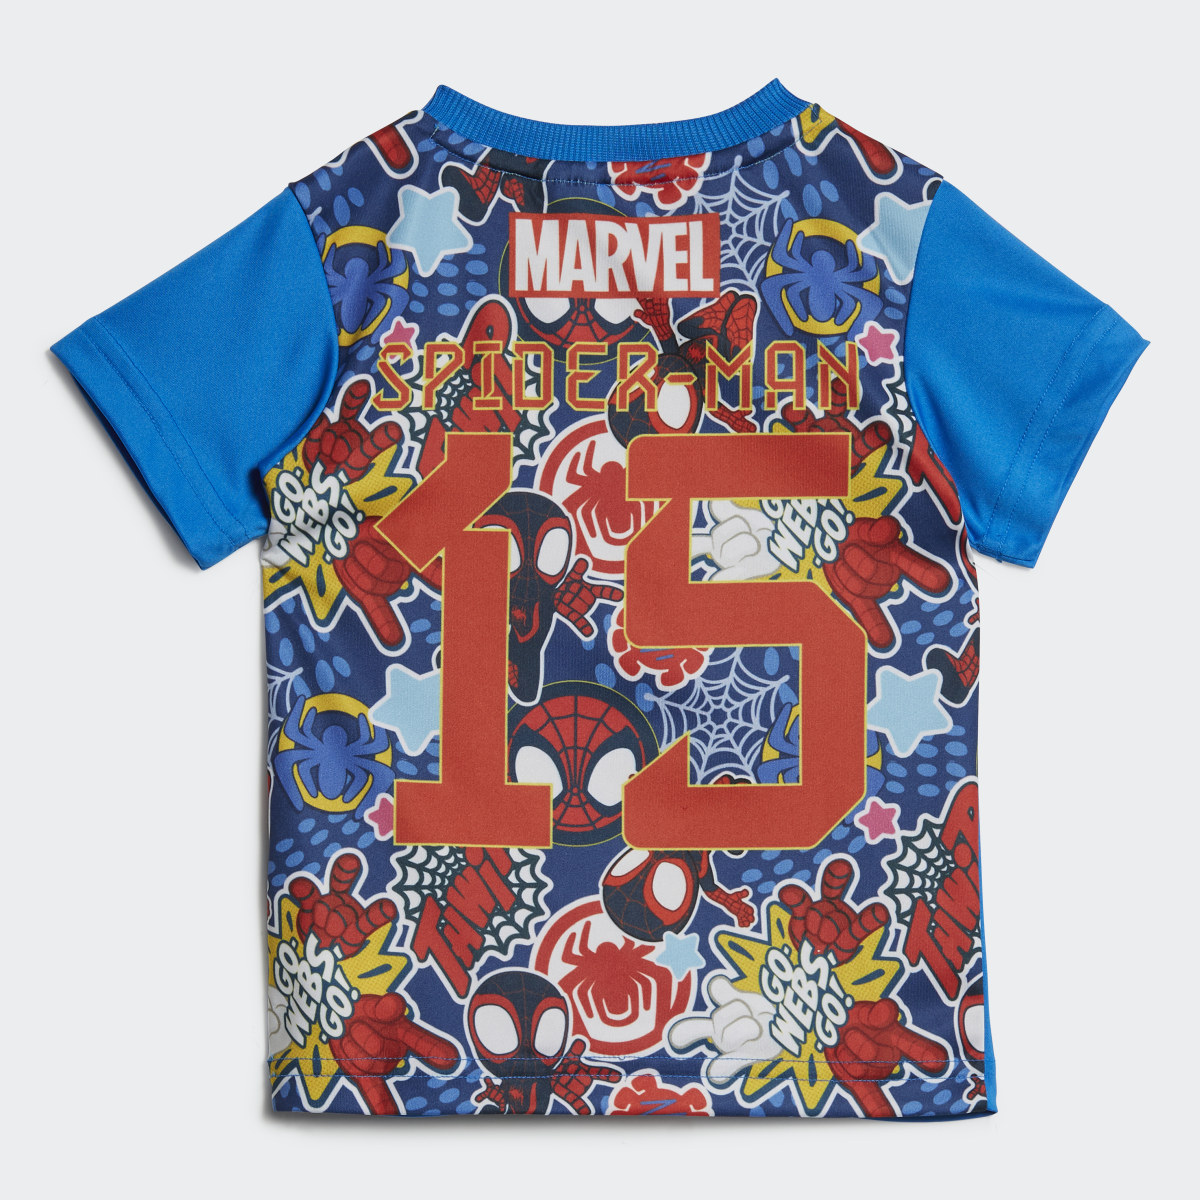 Adidas Conjunto de Verão Spider-Man adidas x Marvel. 4